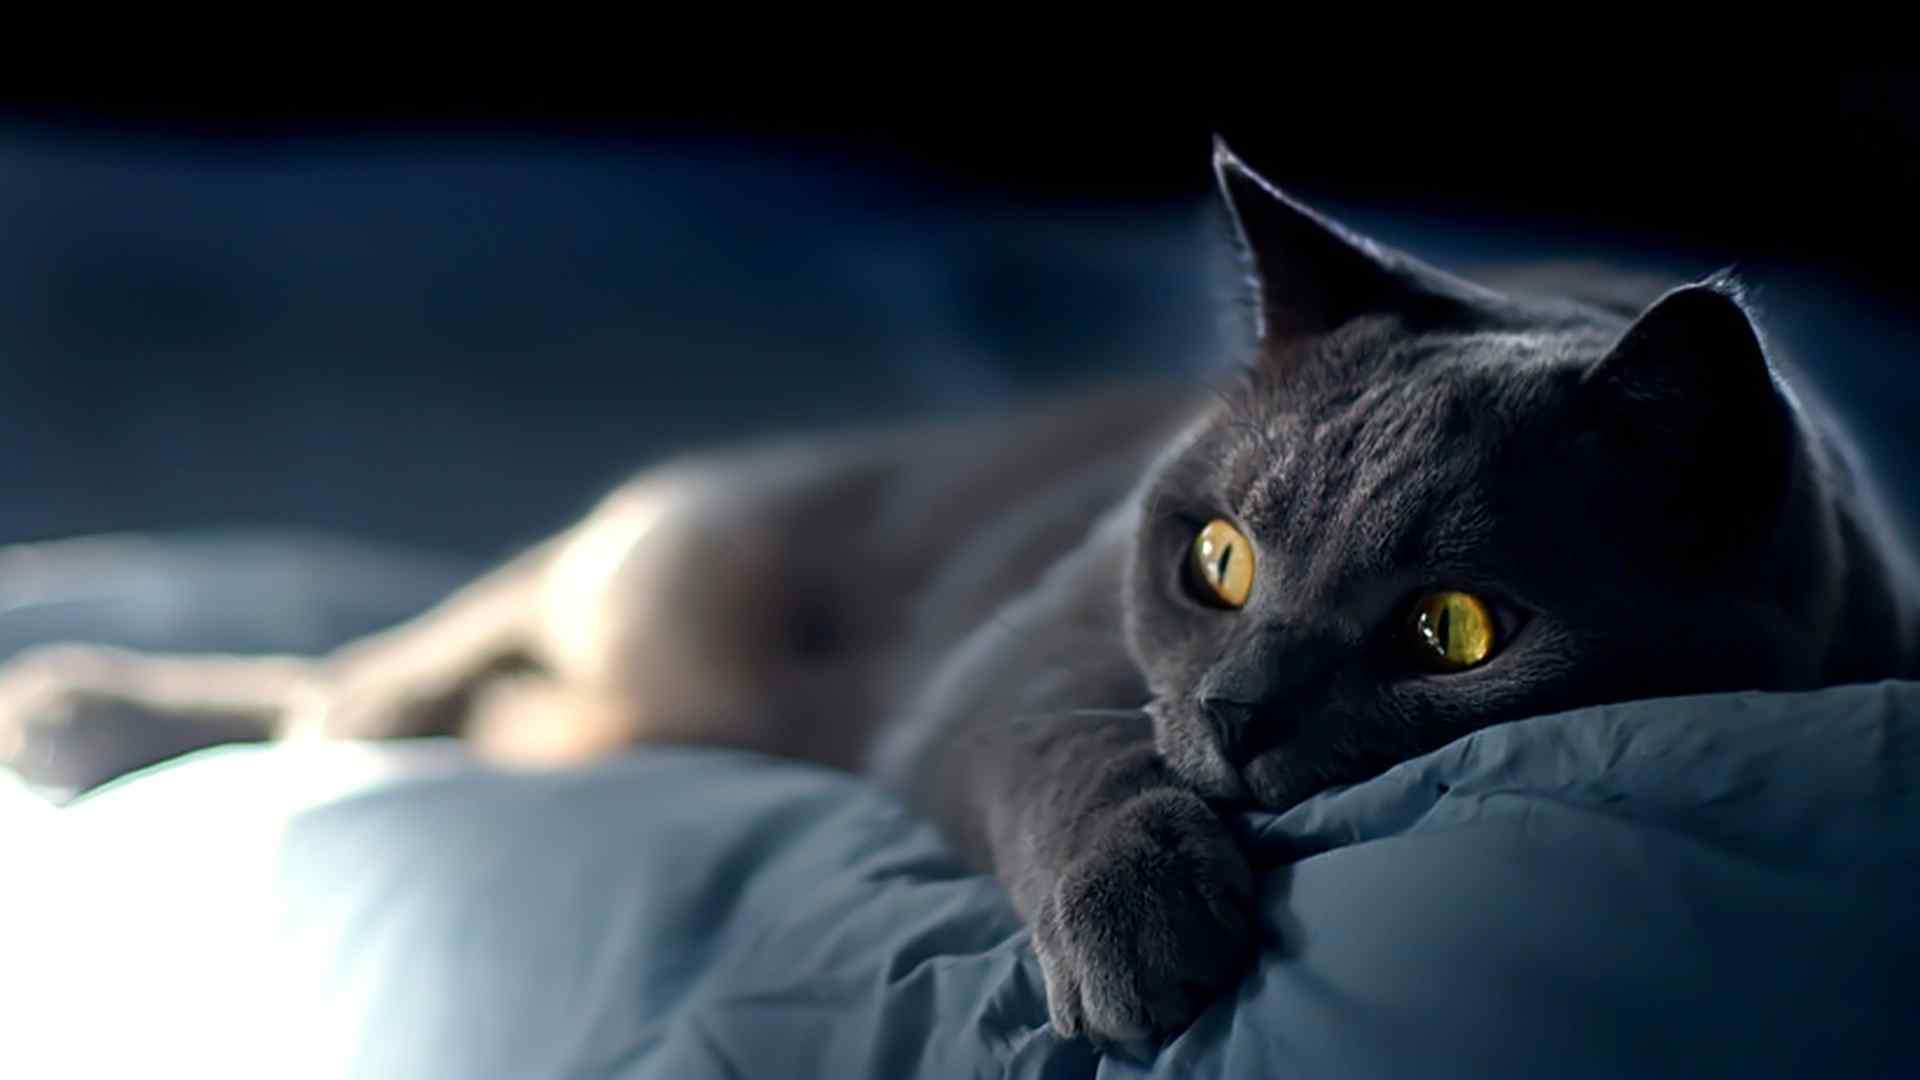 黑色猫咪躺着卖萌桌面壁纸